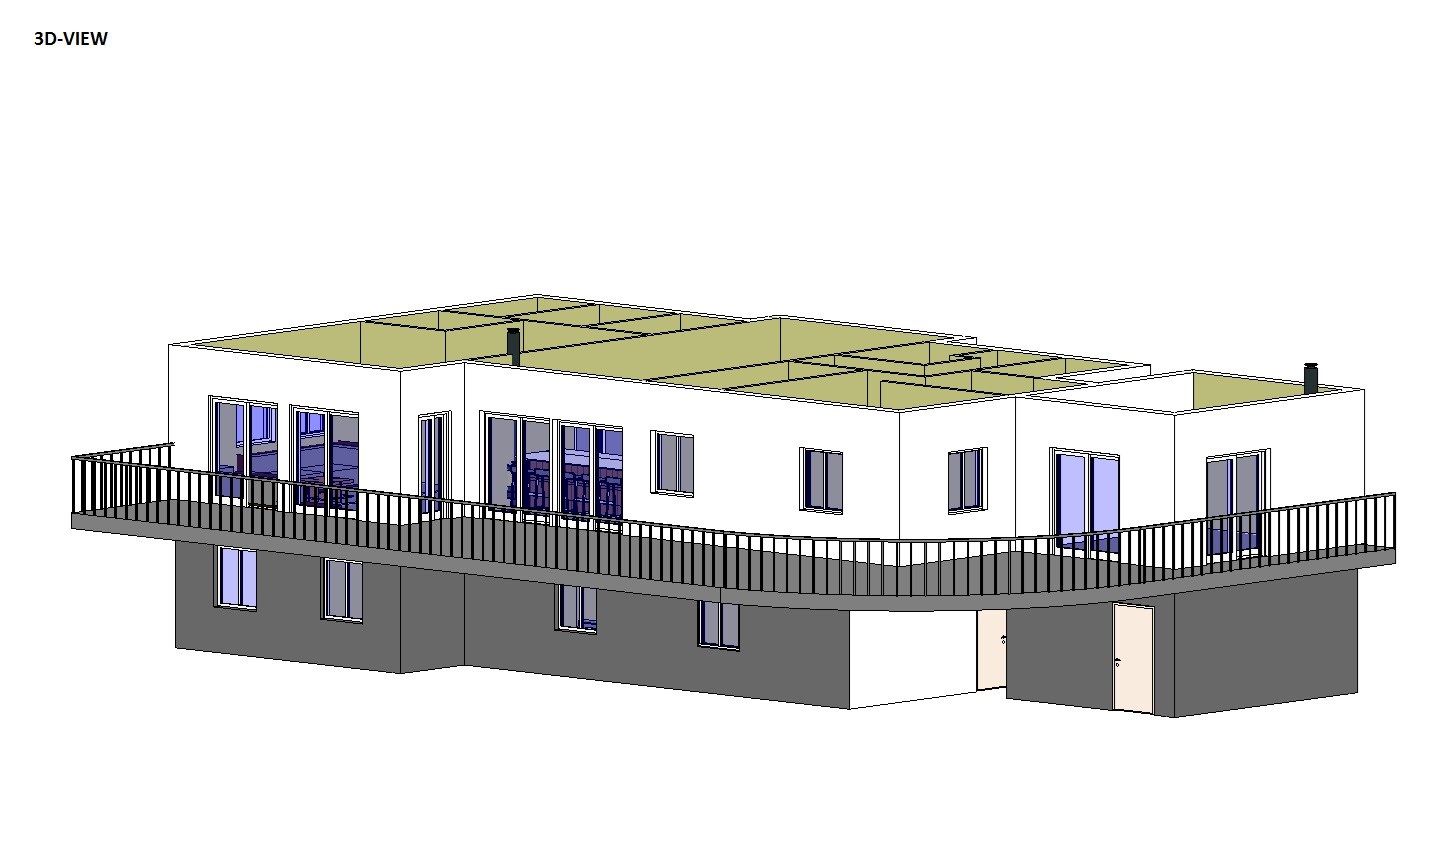 Hvordan ville DU løst takeutforming på dette huset (og fasade/materialvalg)? - 3D-VIEW.jpg - Anonym